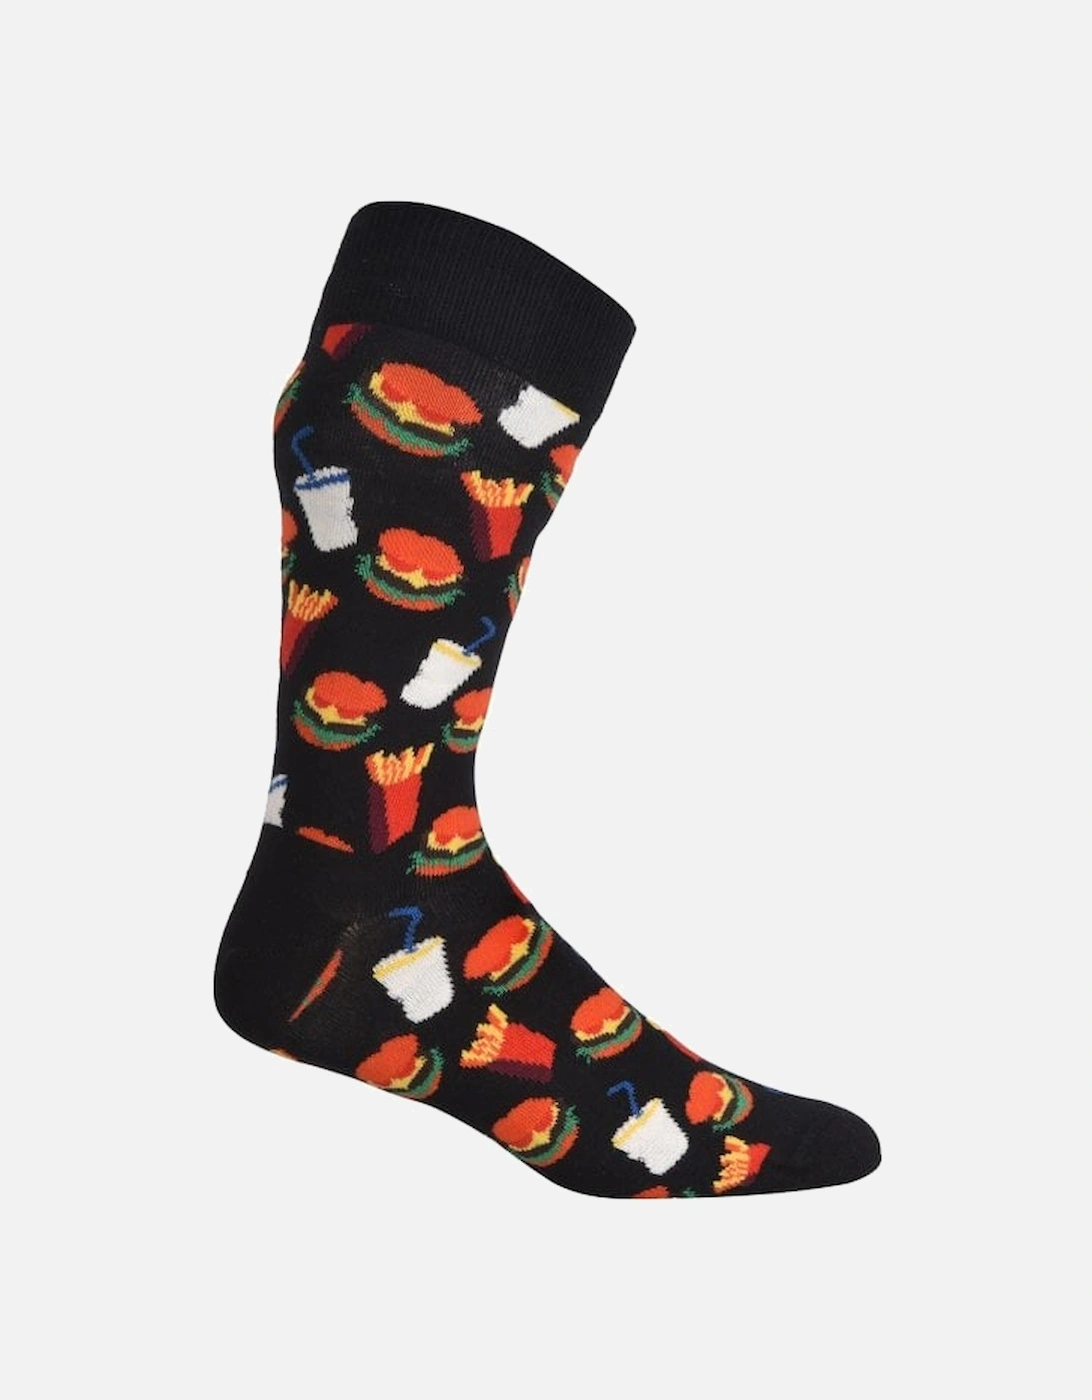 Hamburger & Fries Socks, Black/multi